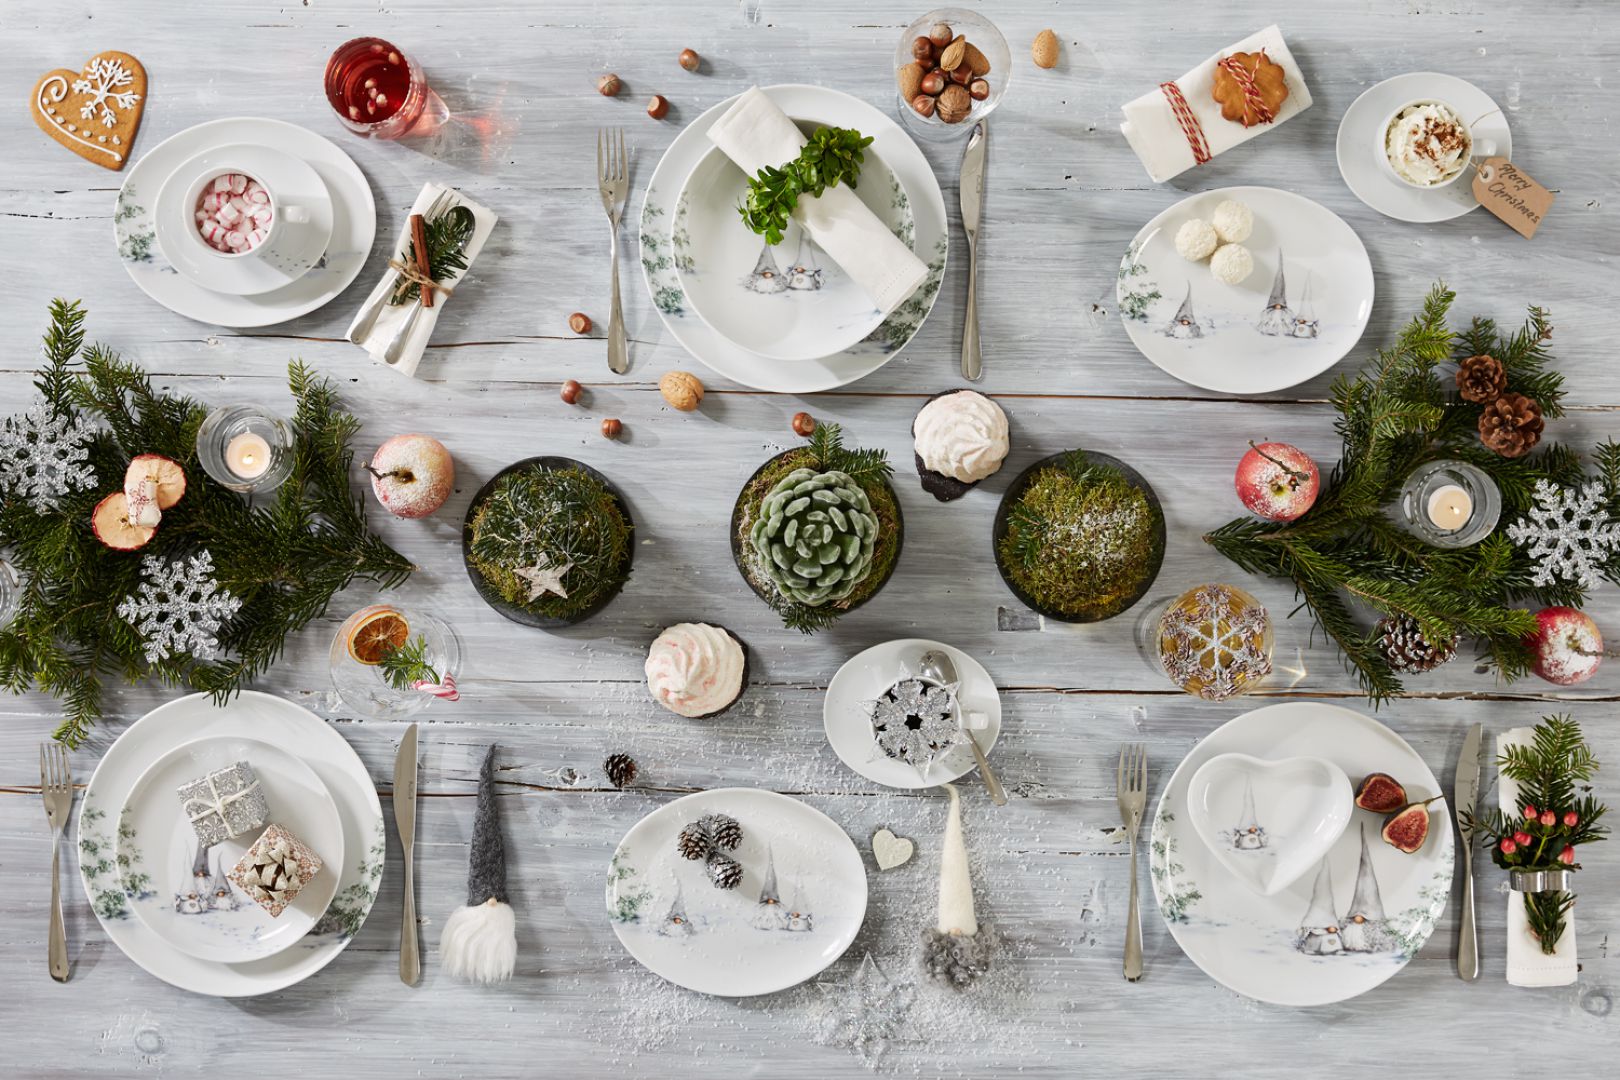 Aranżacja stołu na święta, serwis: Asas Christmas White. Fot. Fyrklövern